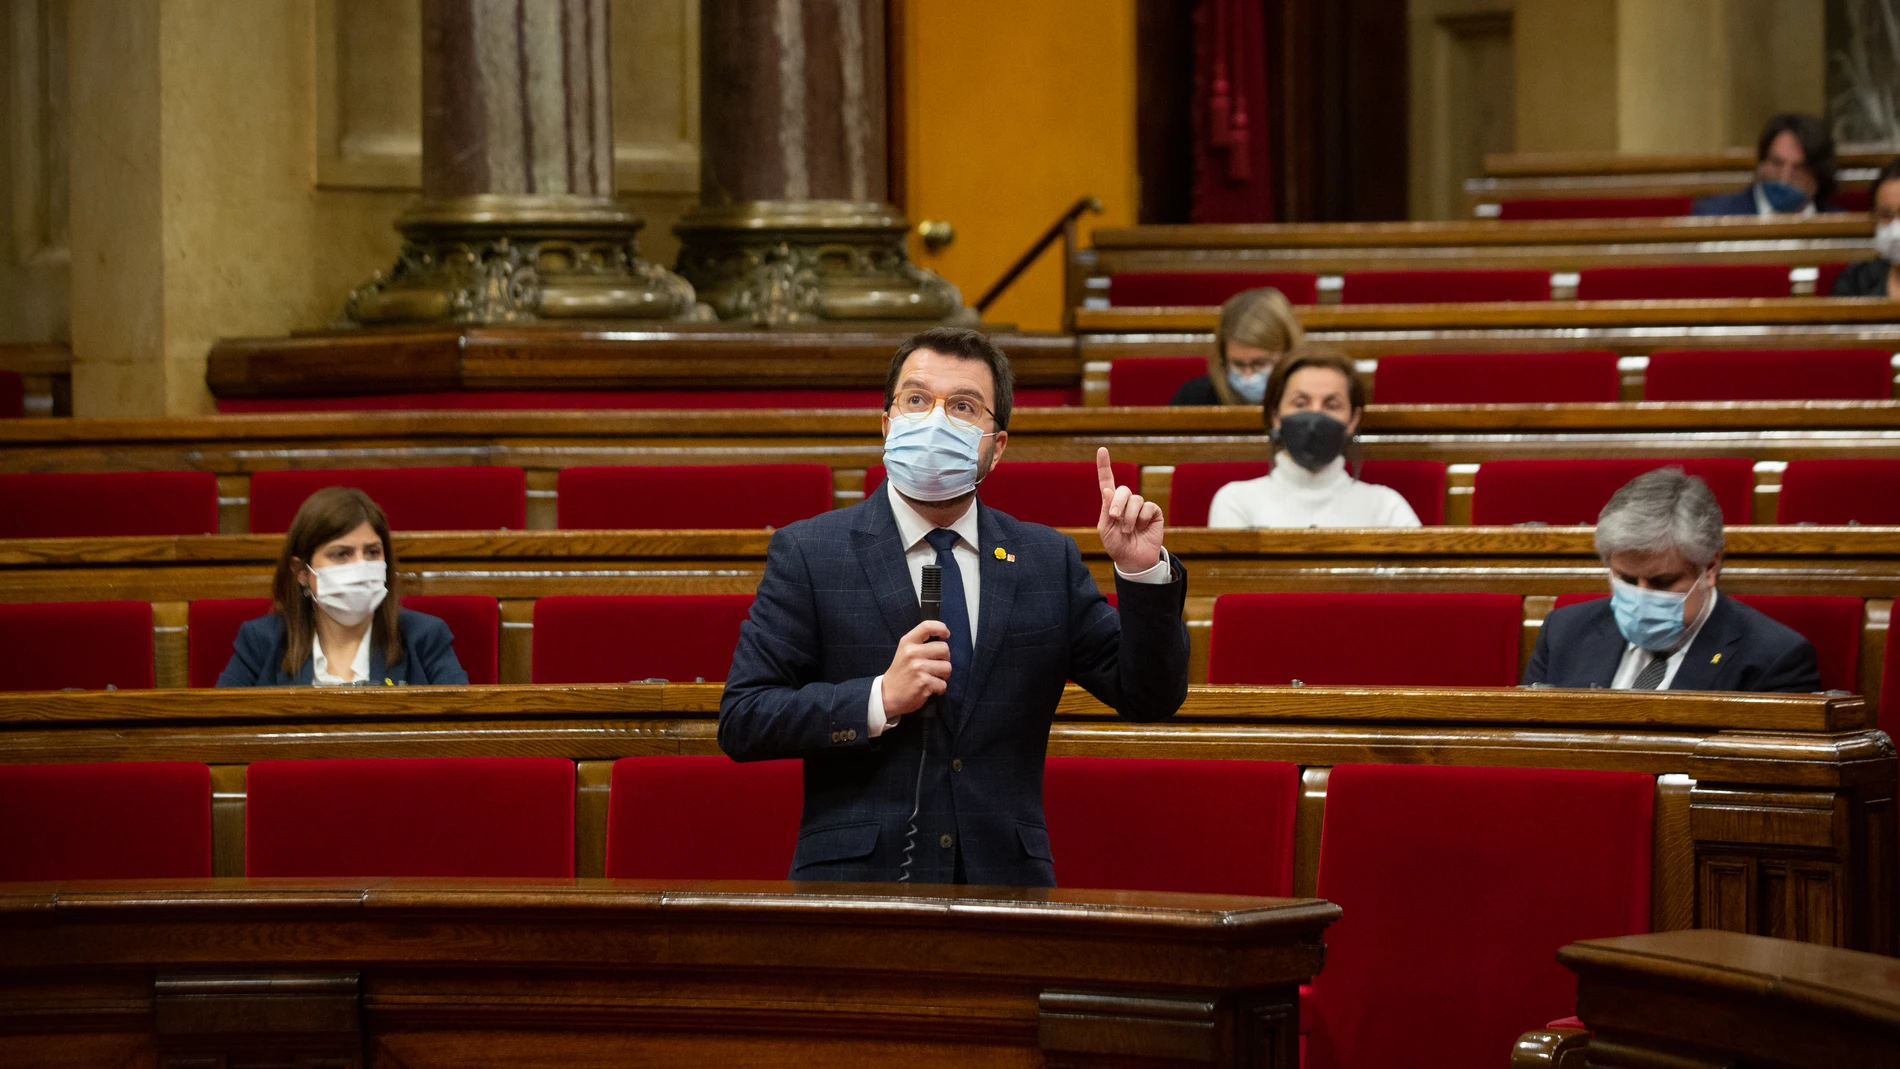 El vicepresidente de la Generalitat, Pere Aragones, interviene durante la sesión ordinaria del Pleno del Parlament, en Barcelona (España), a 18 de noviembre de 2020. La sesión de este miércoles ha tratado, entre otros asuntos, sobre la gestión de la pandemia del coronavirus por parte del Govern de la Generalitat.18 NOVIEMBRE 2020;PARLAMENT DE CATALUNYA;PERE ARAGONÉS;POLÍTICA;ECONOMÍA;PANDEMIA;EPIDEMIA;SALUD;ENFERMEDADESDavid Zorrakino / Europa Press18/11/2020